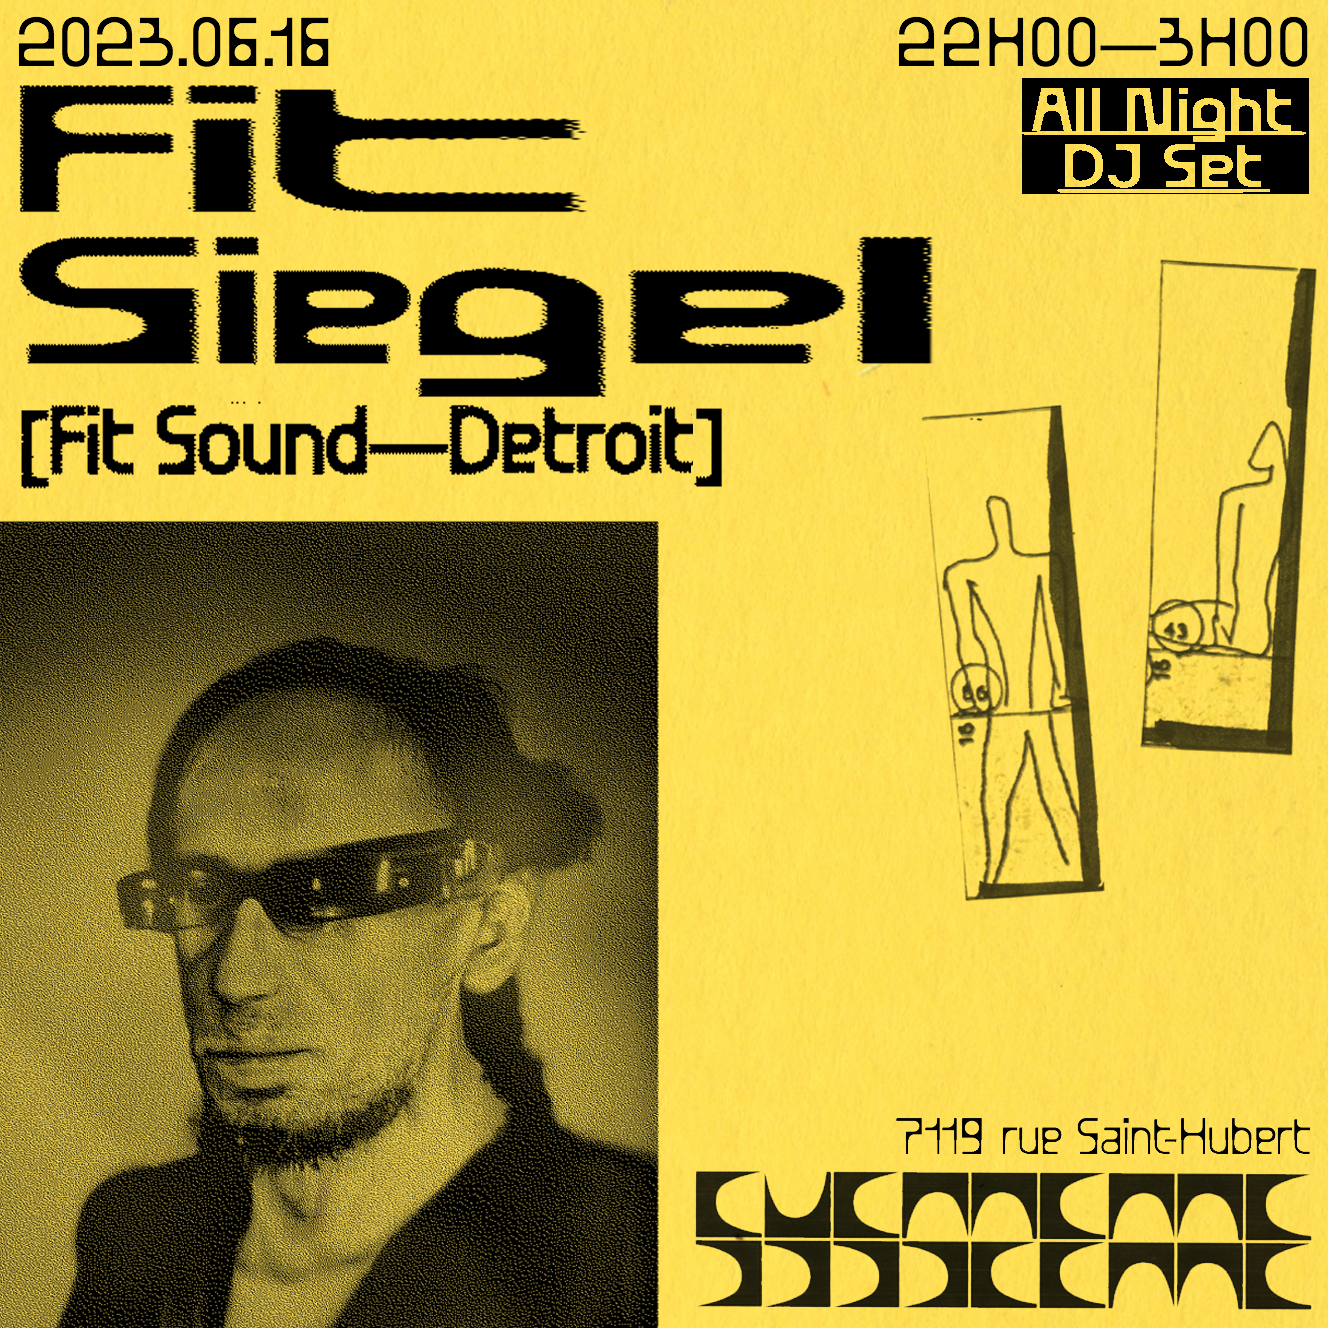 FIT Siegel [Fit Sound - Detroit] - フライヤー表